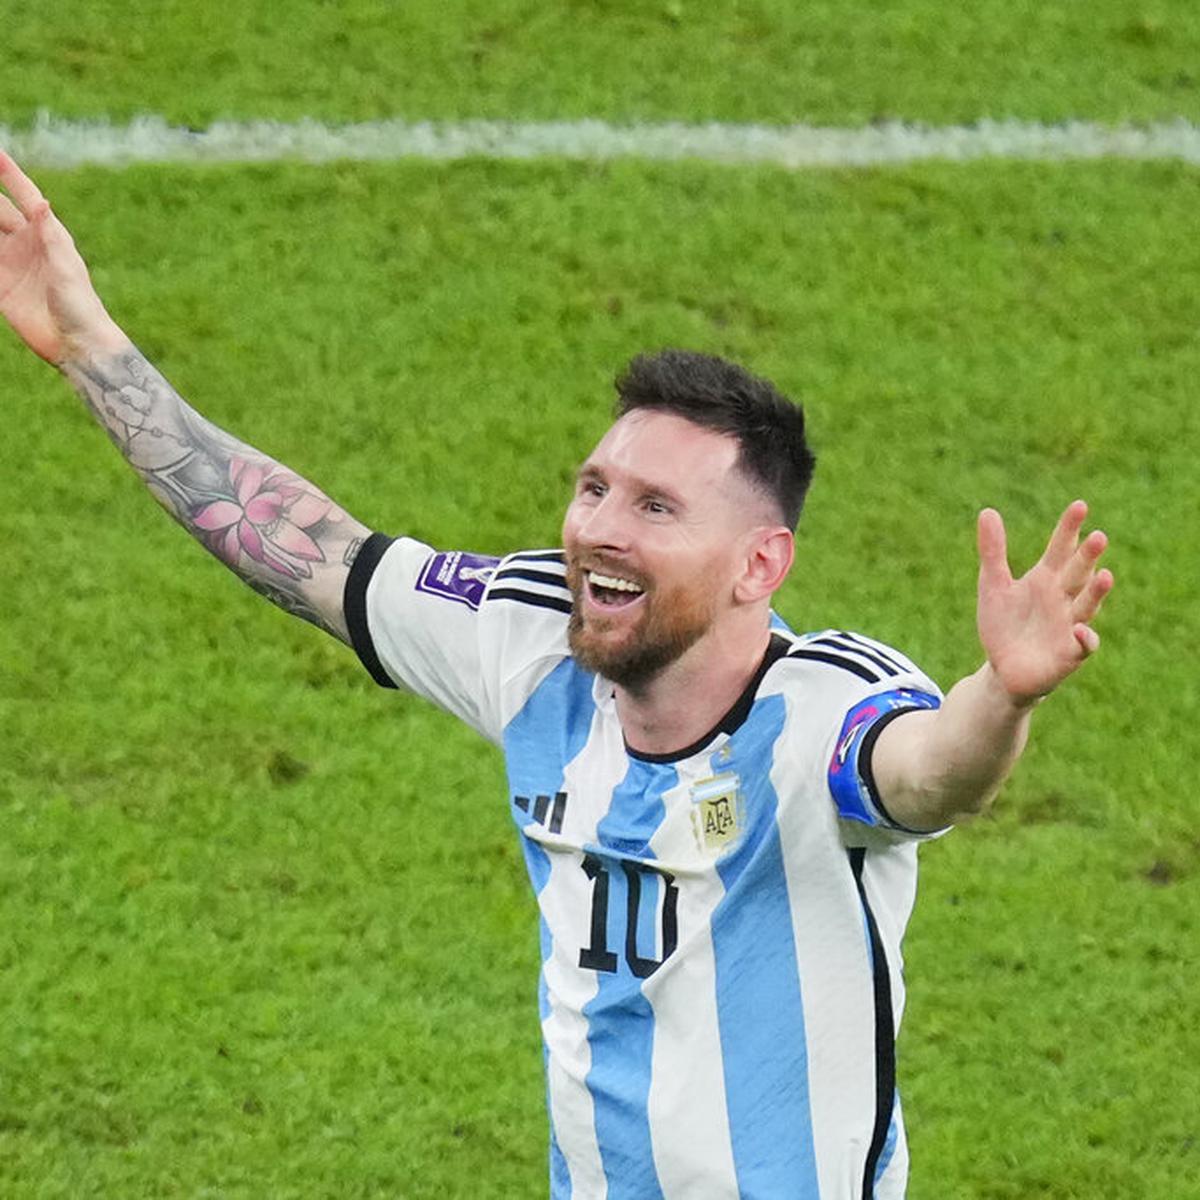 El astronómico precio de la camiseta que usó Messi en el video del anuncio  de su fichaje